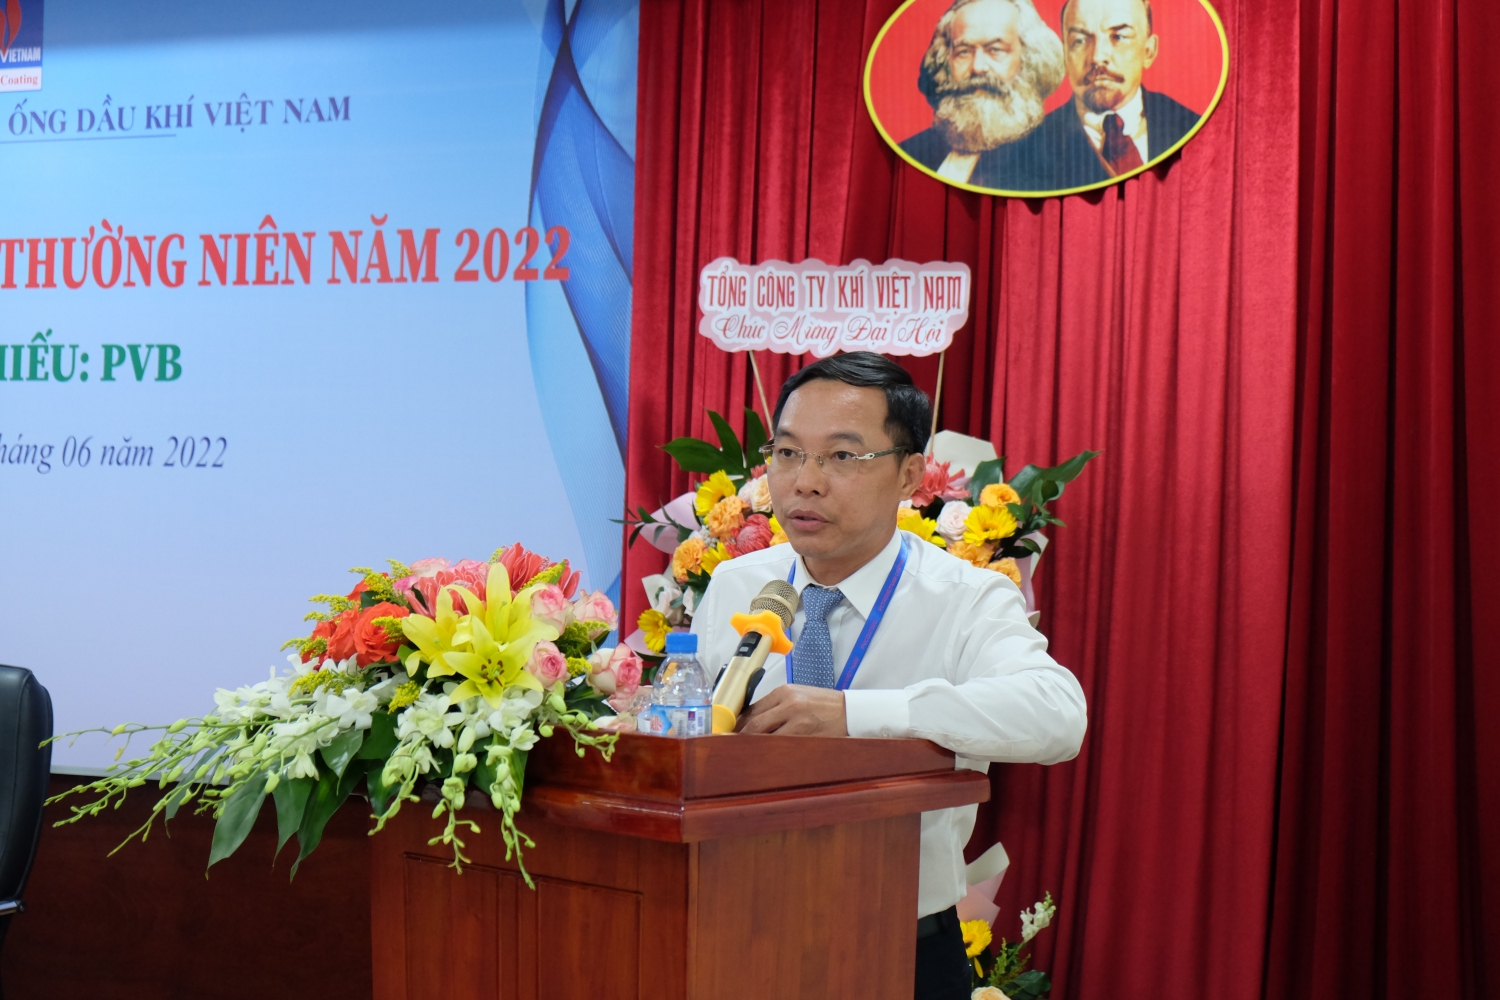  Ông Lê Hồng Hải – Thành viên HĐQT, Giám đốc Công ty trình bày Báo cáo kết quả SXKD năm 2021, kế hoạch SXKD năm 2022.